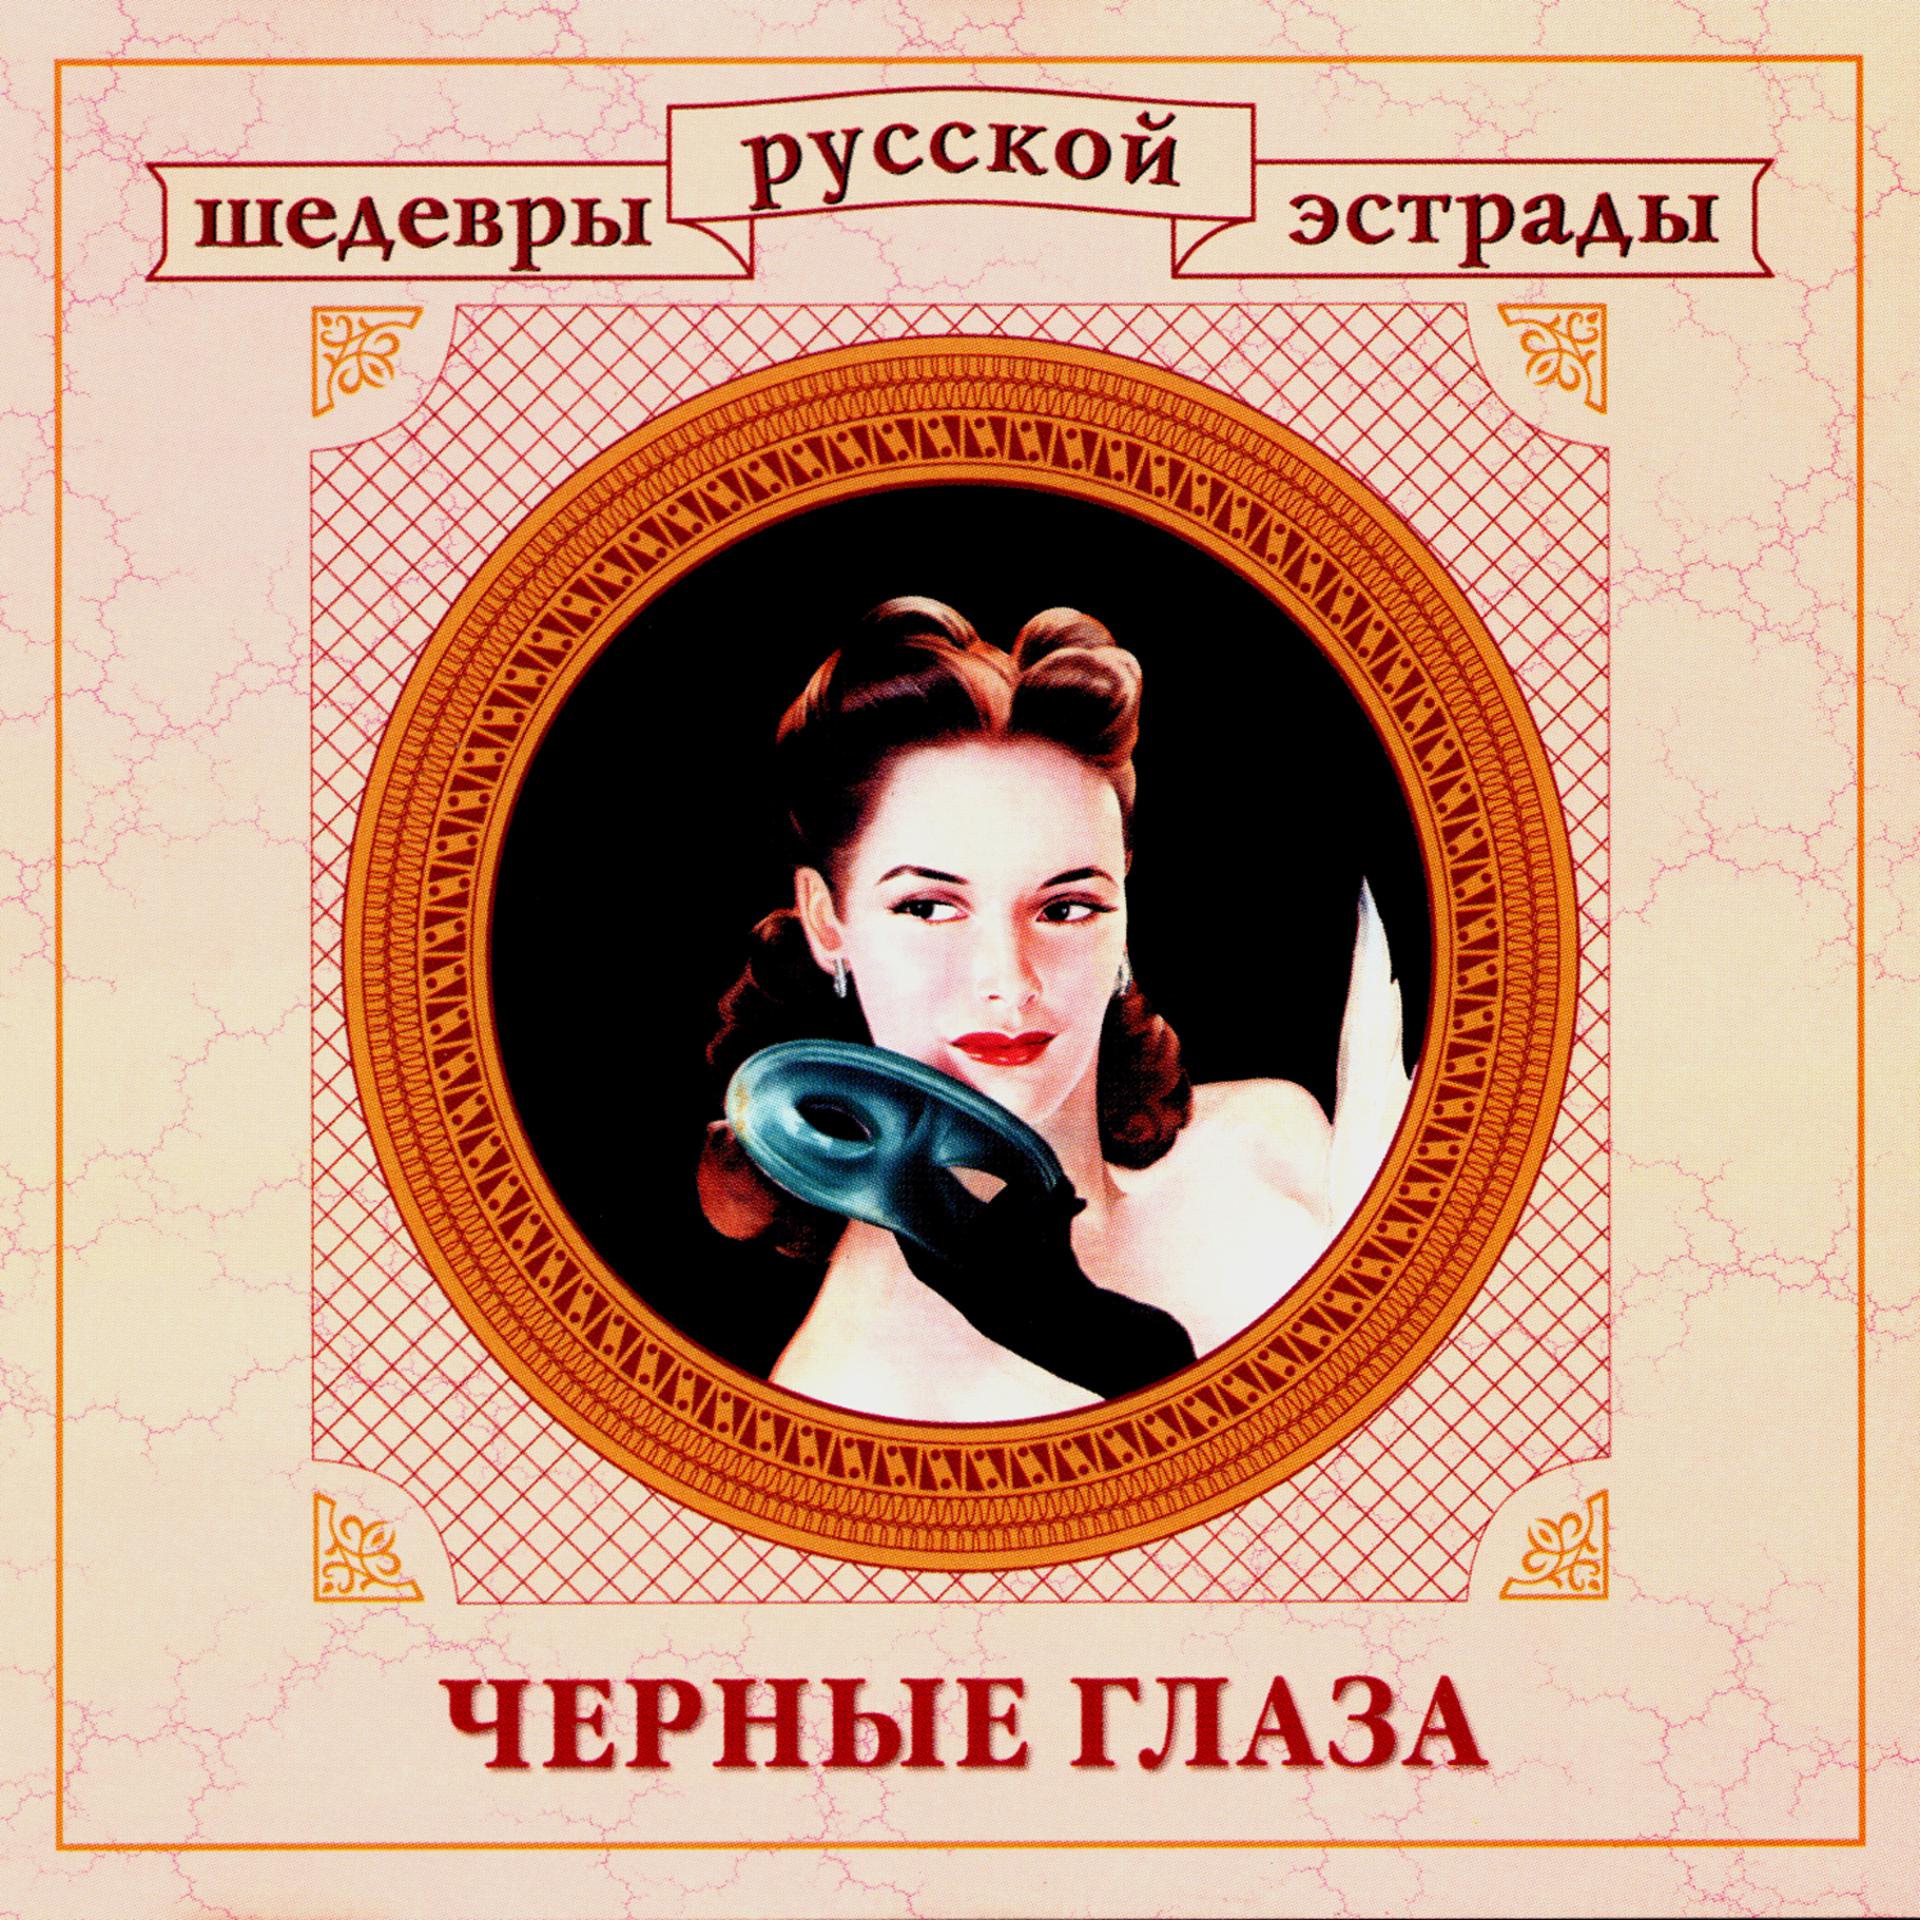 Постер альбома Шедевры русской эстрады. Черные глаза